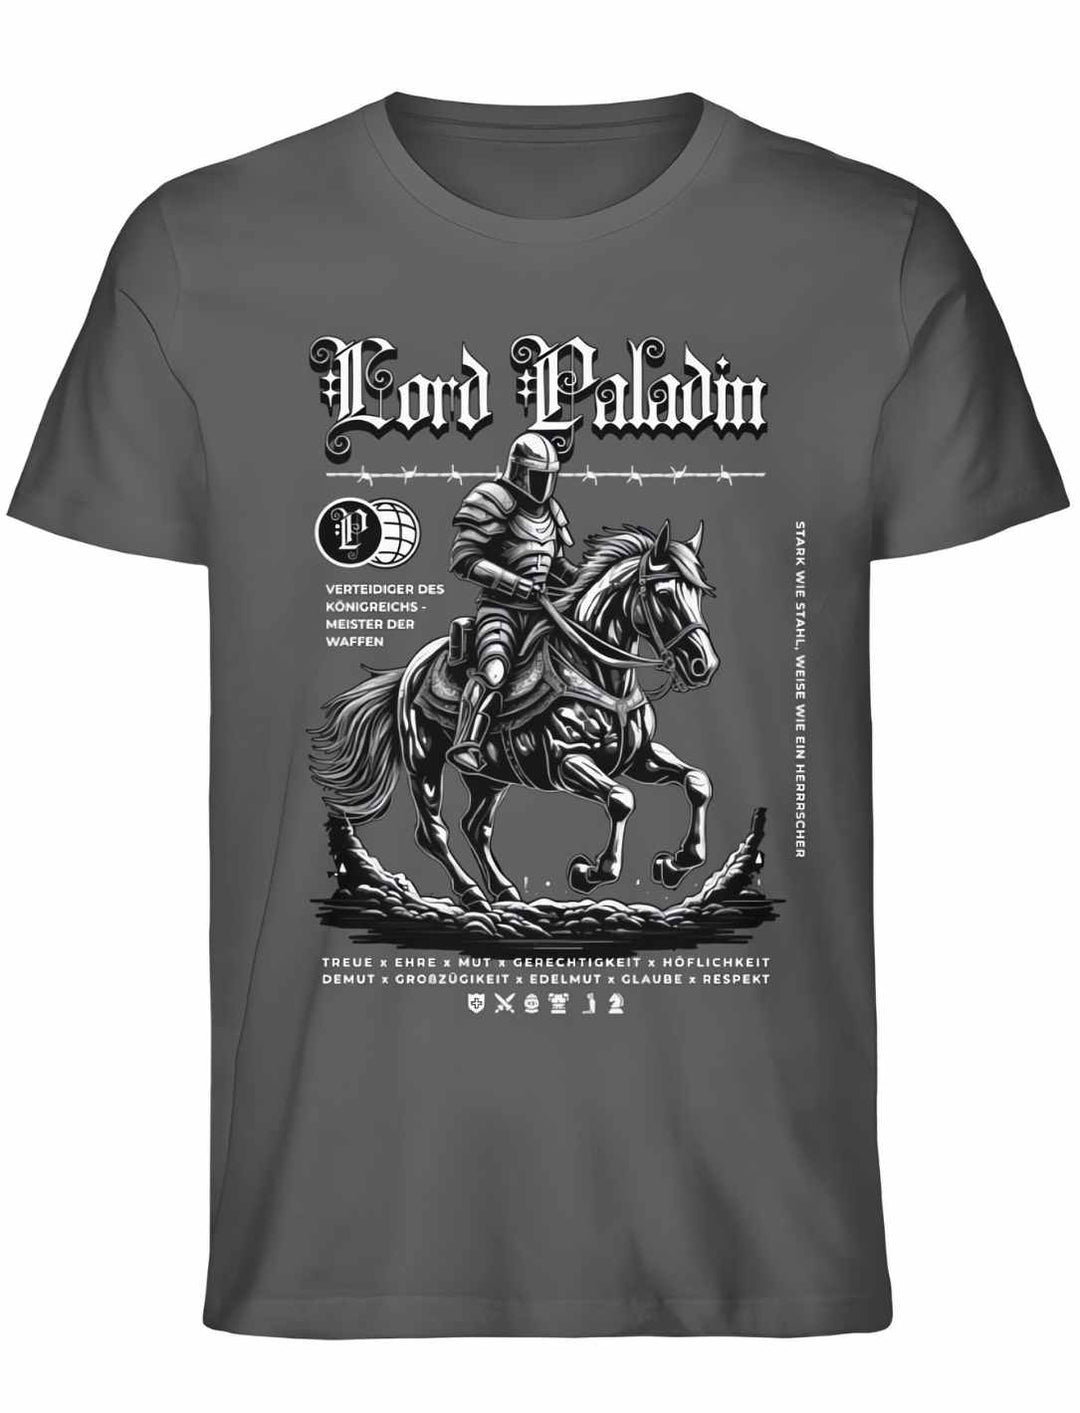 Lord Paladin Unisex T-Shirt in Anthrazit – Dunkle Eleganz trifft heroisches Design.